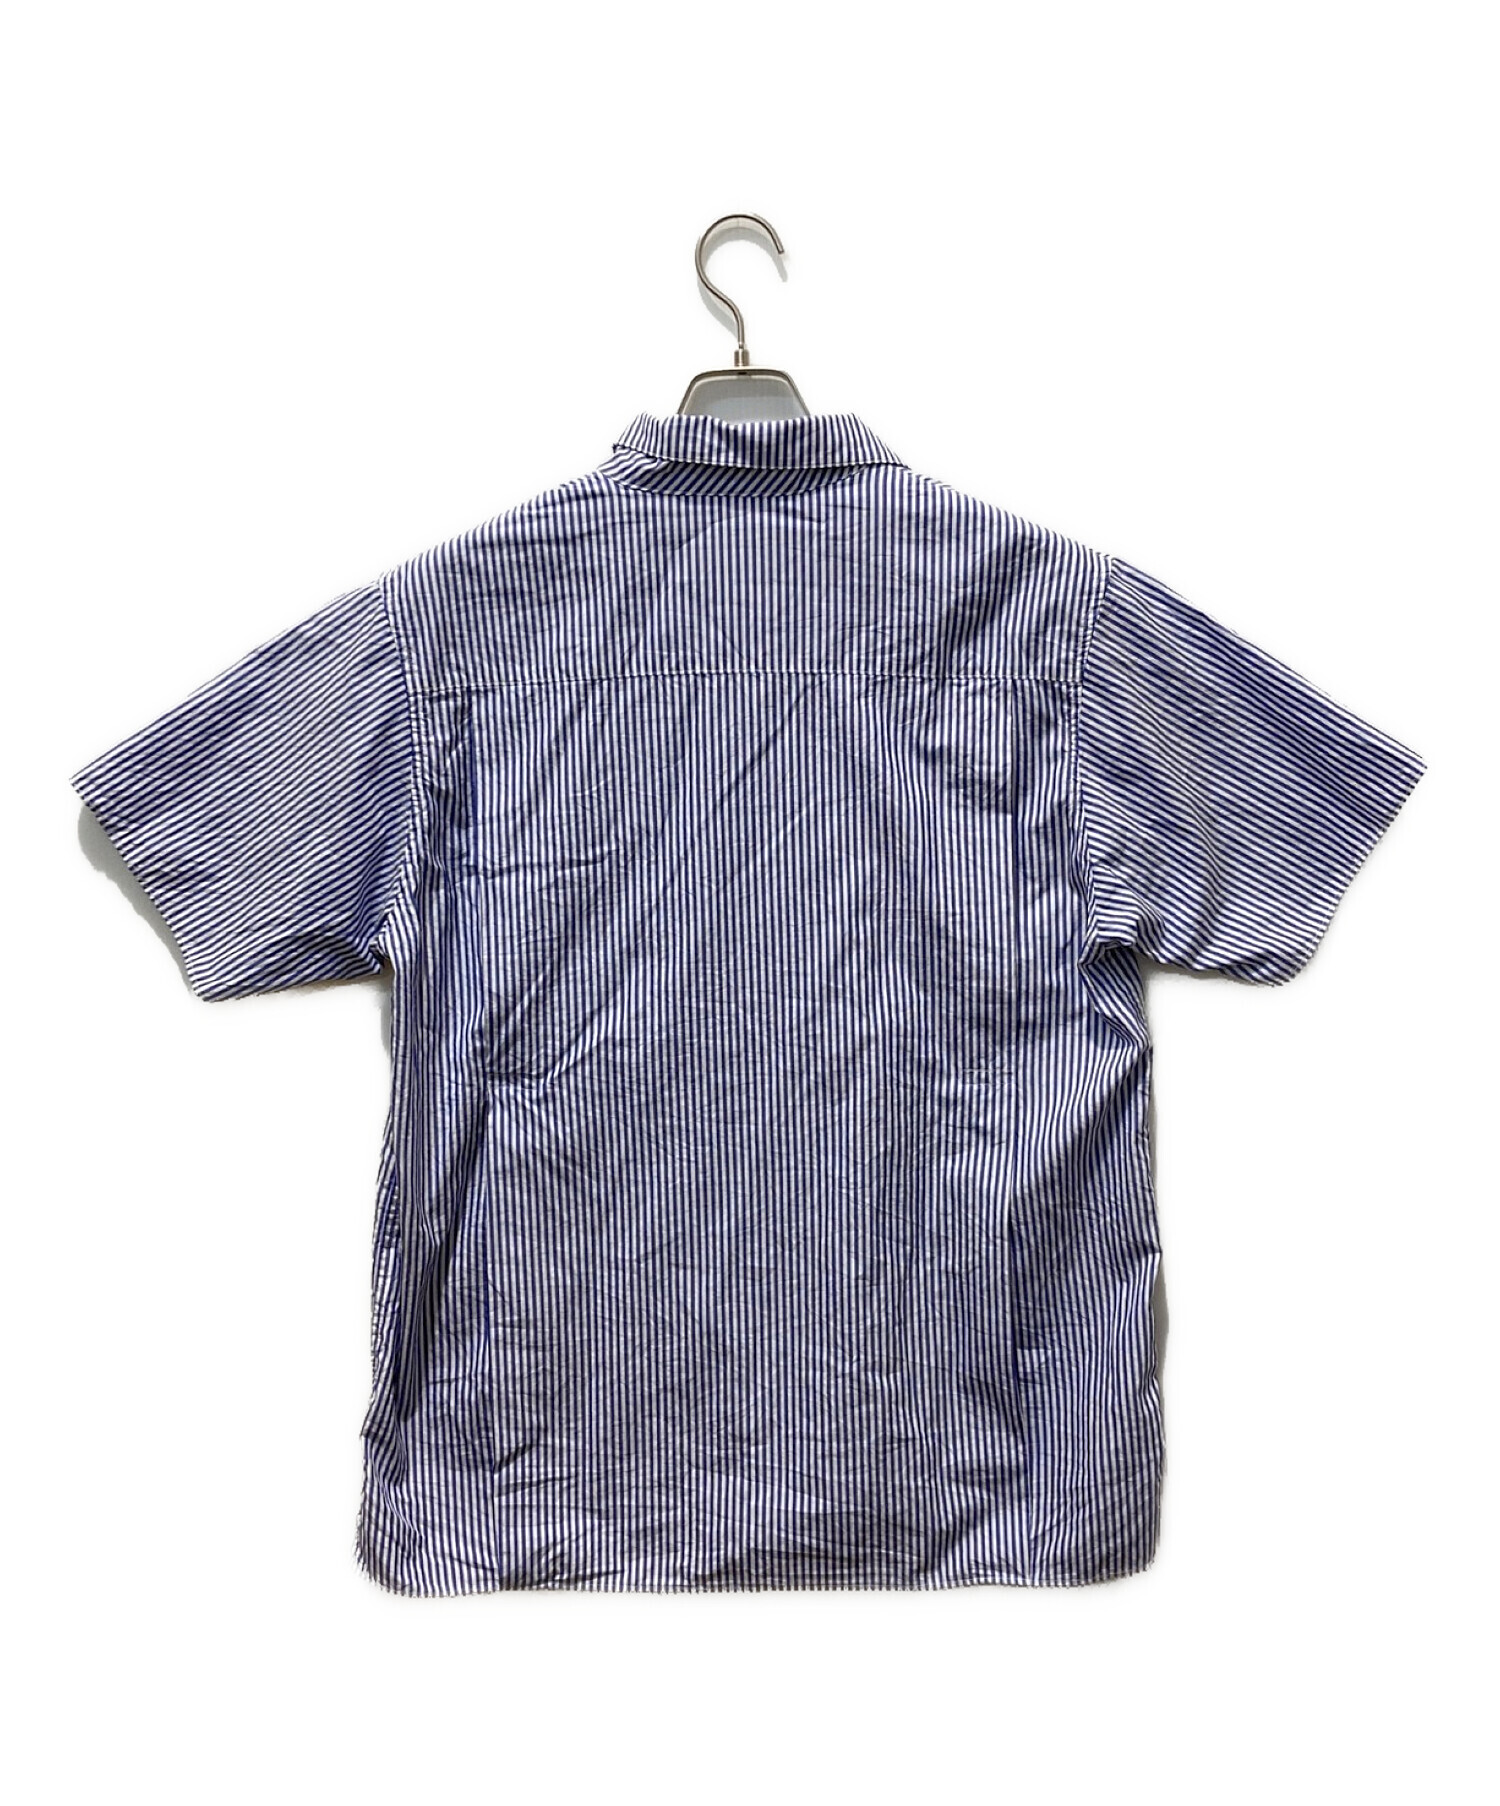 超高品質で人気の 未使用 ダブルガーゼハンドプリントシャツ PHINGERIN